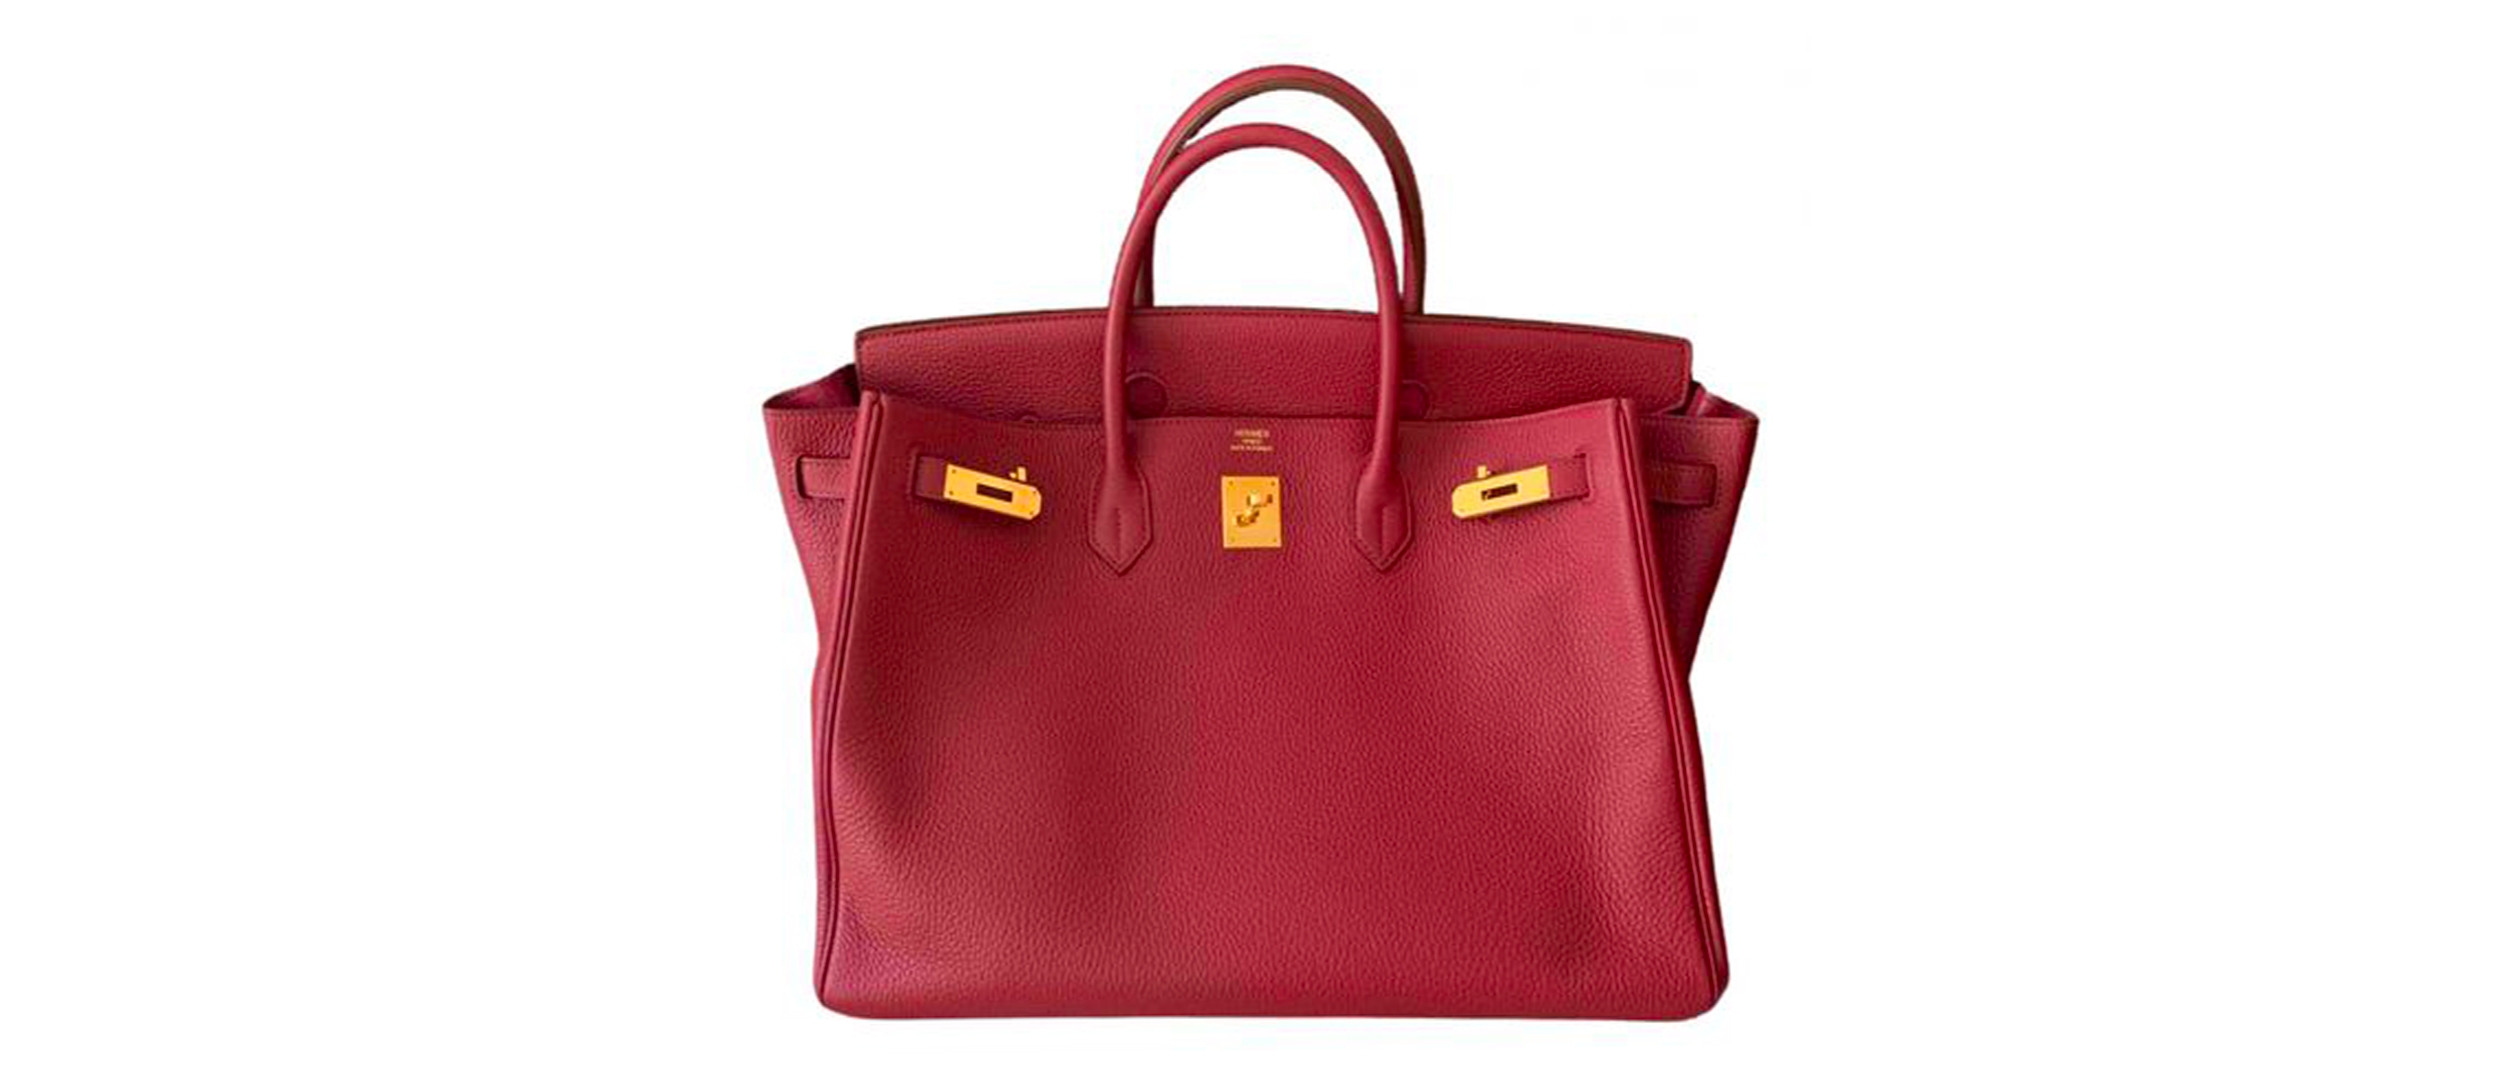 Jane Birkin orders Hermes to rename its Birkin bag